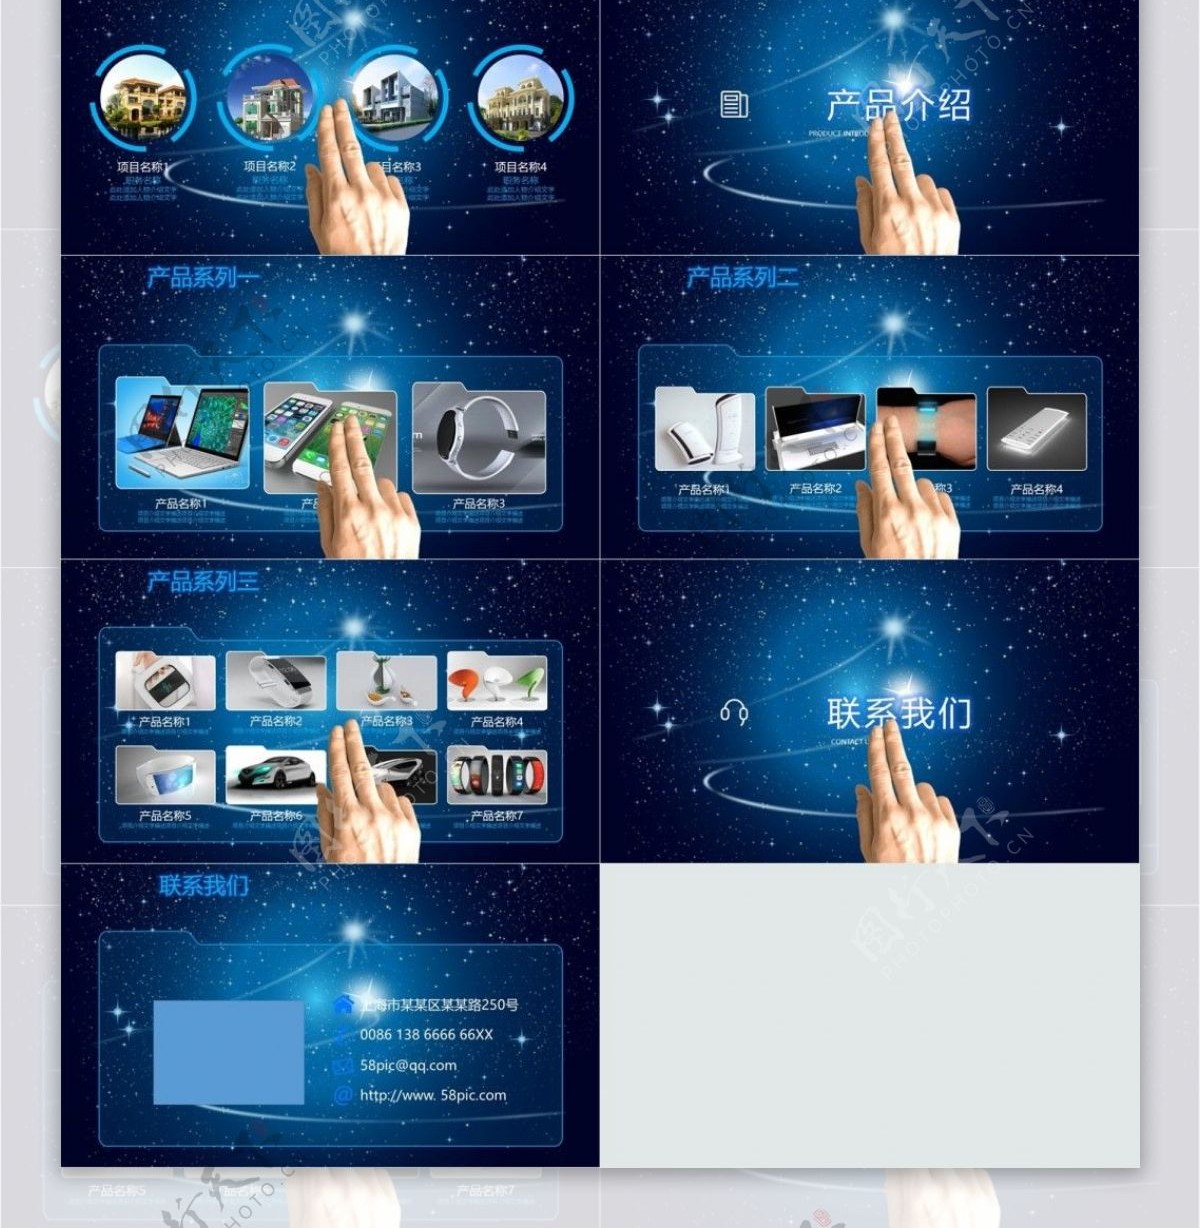 PPT模板设计蓝色科技传媒